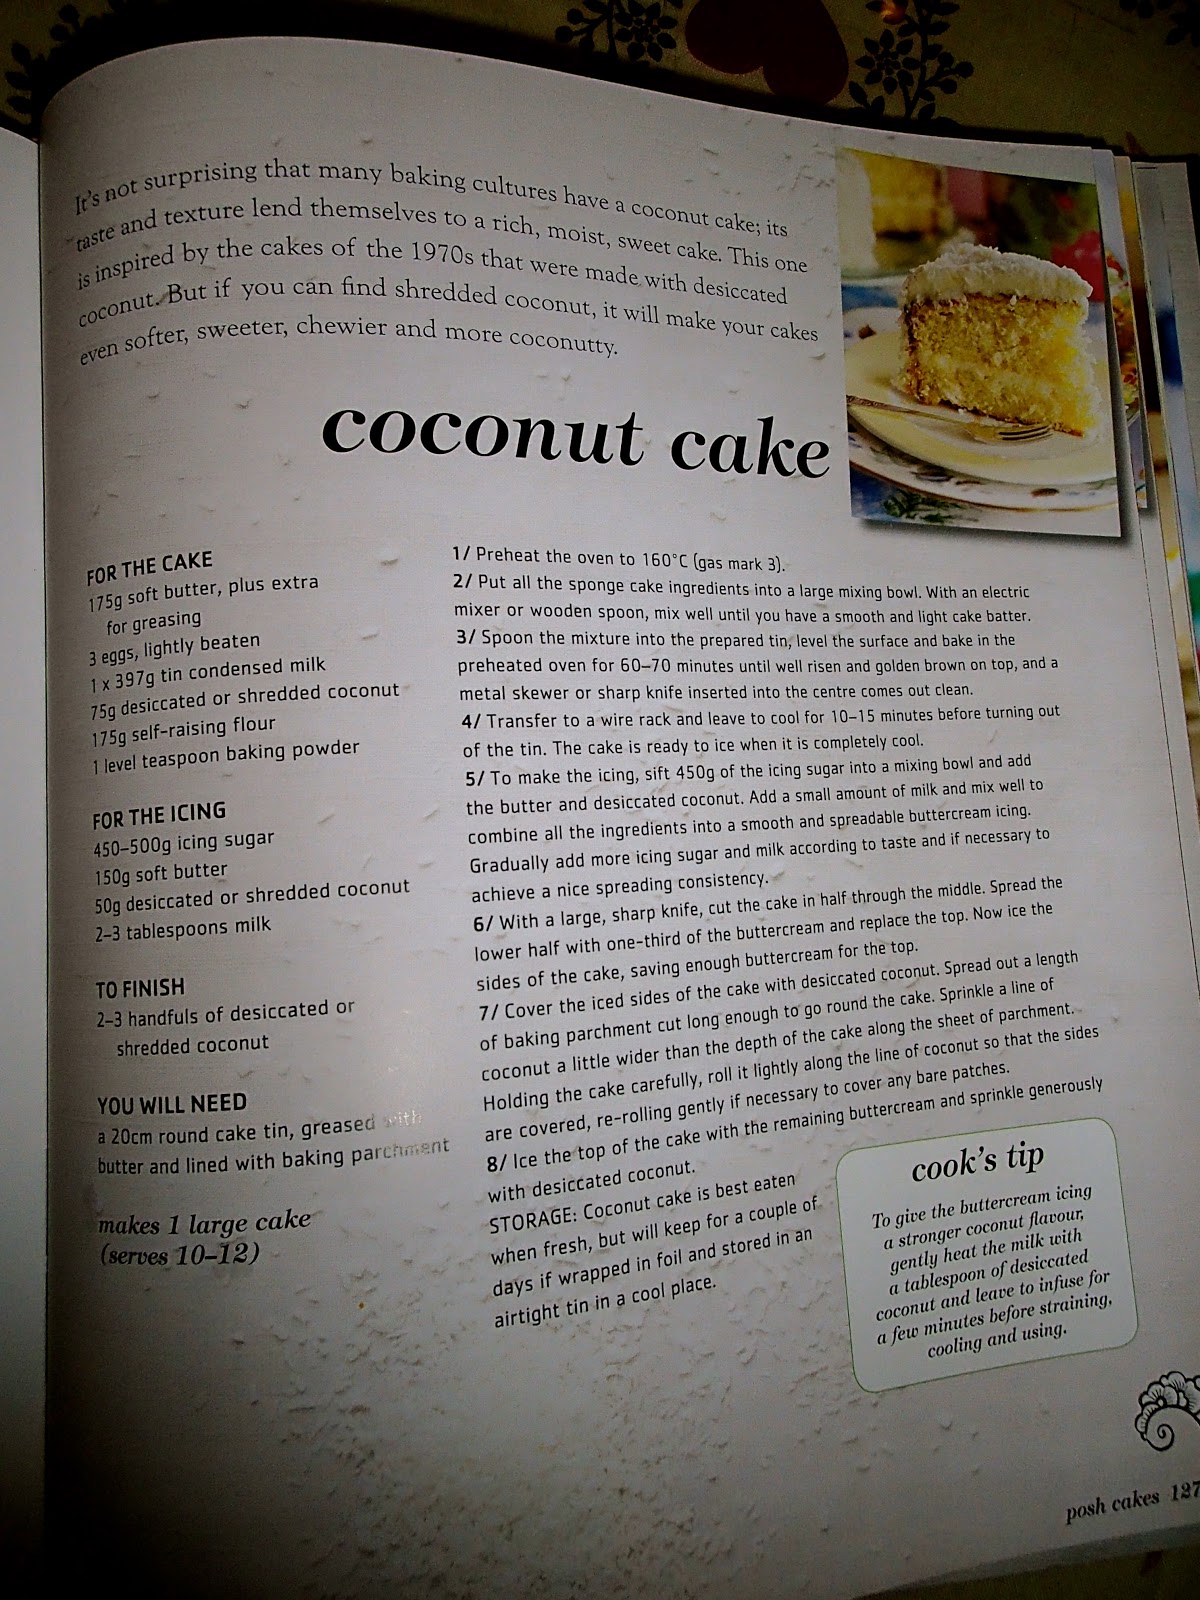 We Tell Sweet Stories: Vintage Coconut Cake in Nordicware Bundt Pan.